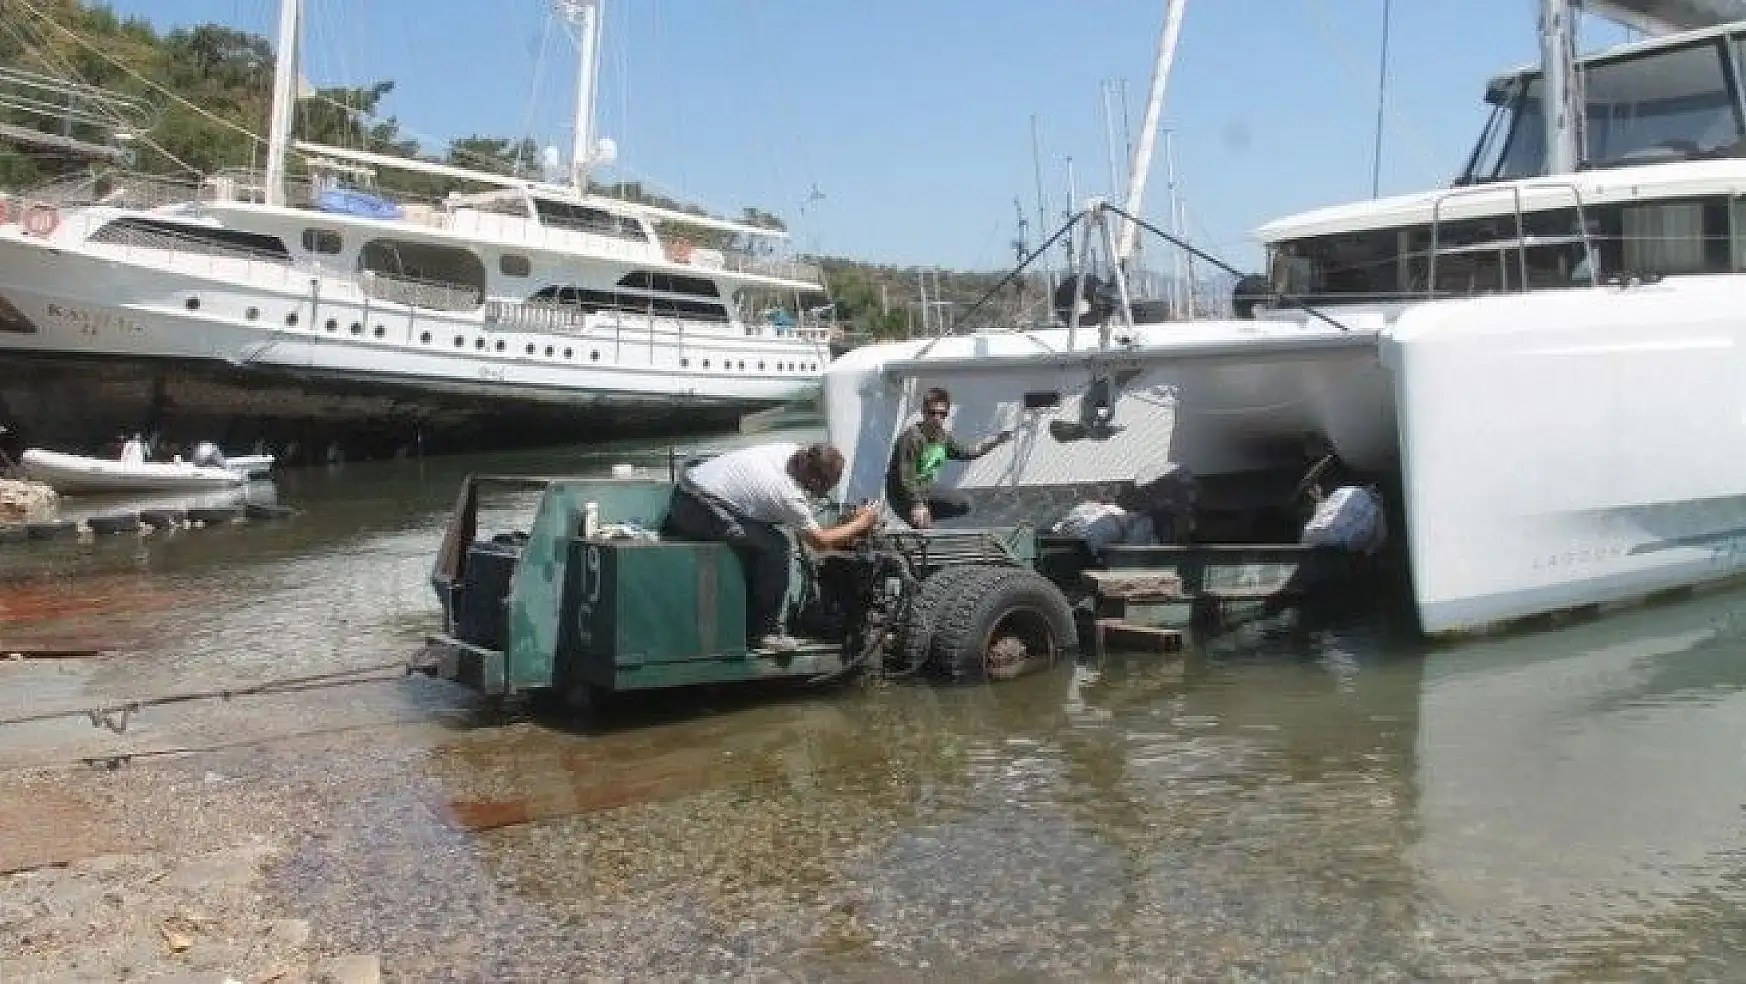 Tersanedeki tekneler son hızla yaz sezonuna hazırlanıyor